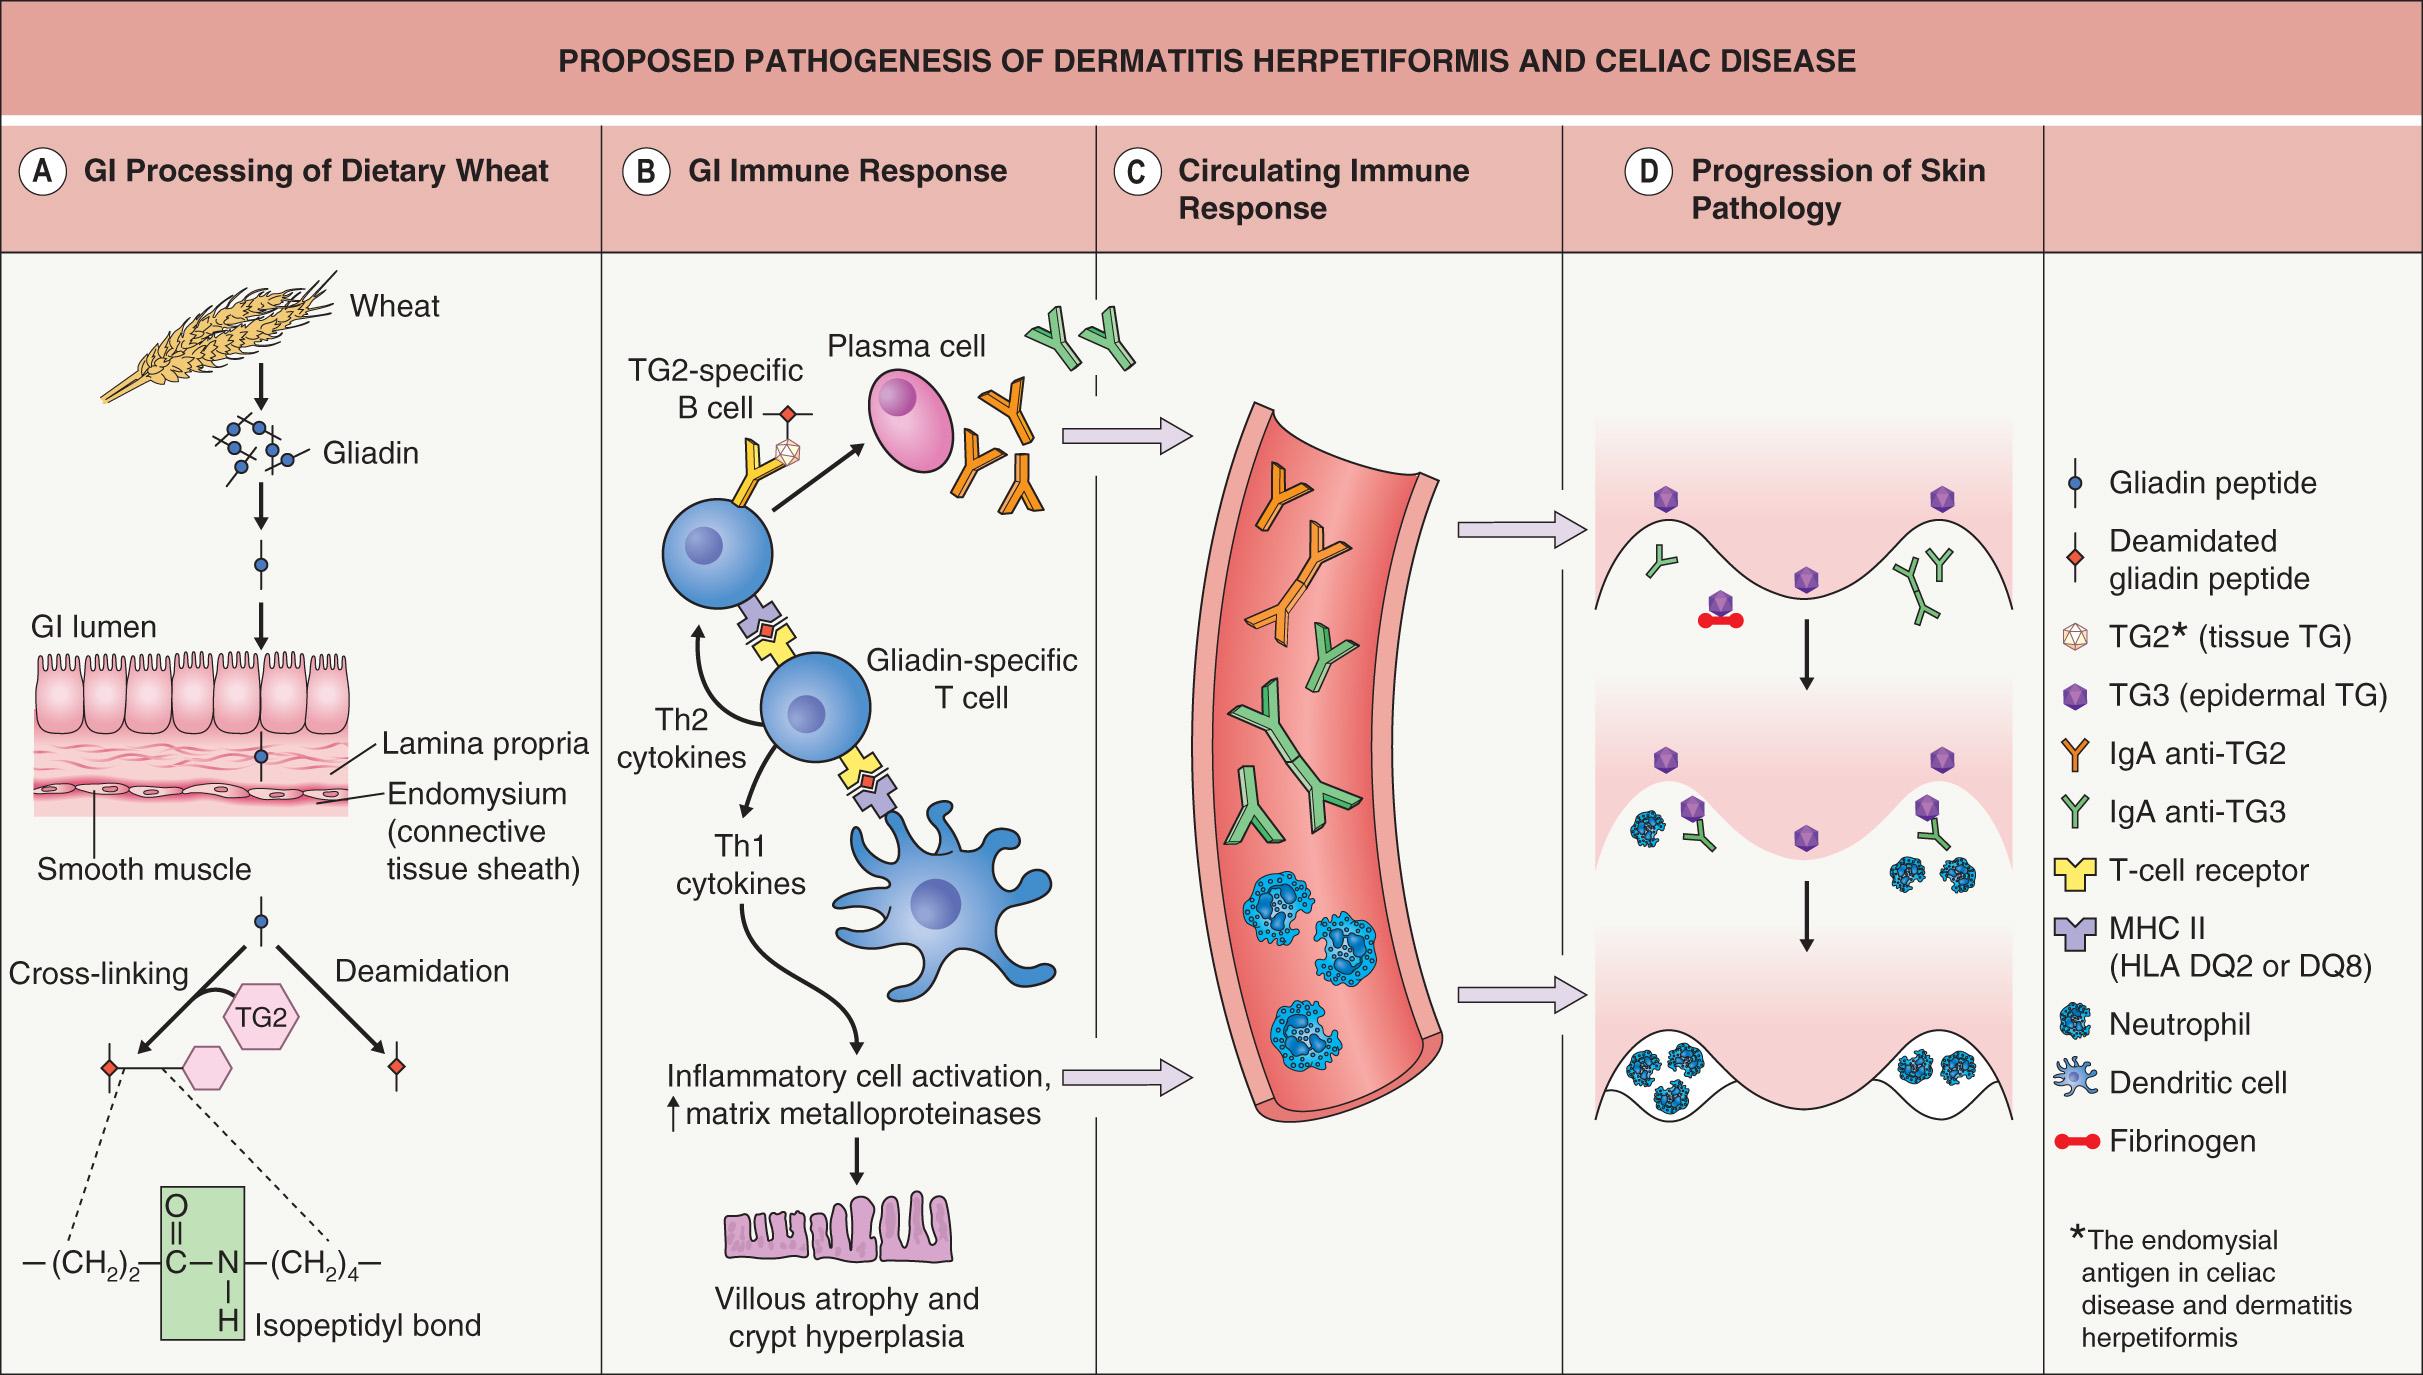 Fig. 31.1, Proposed pathogenesis of dermatitis herpetiformis and celiac disease.